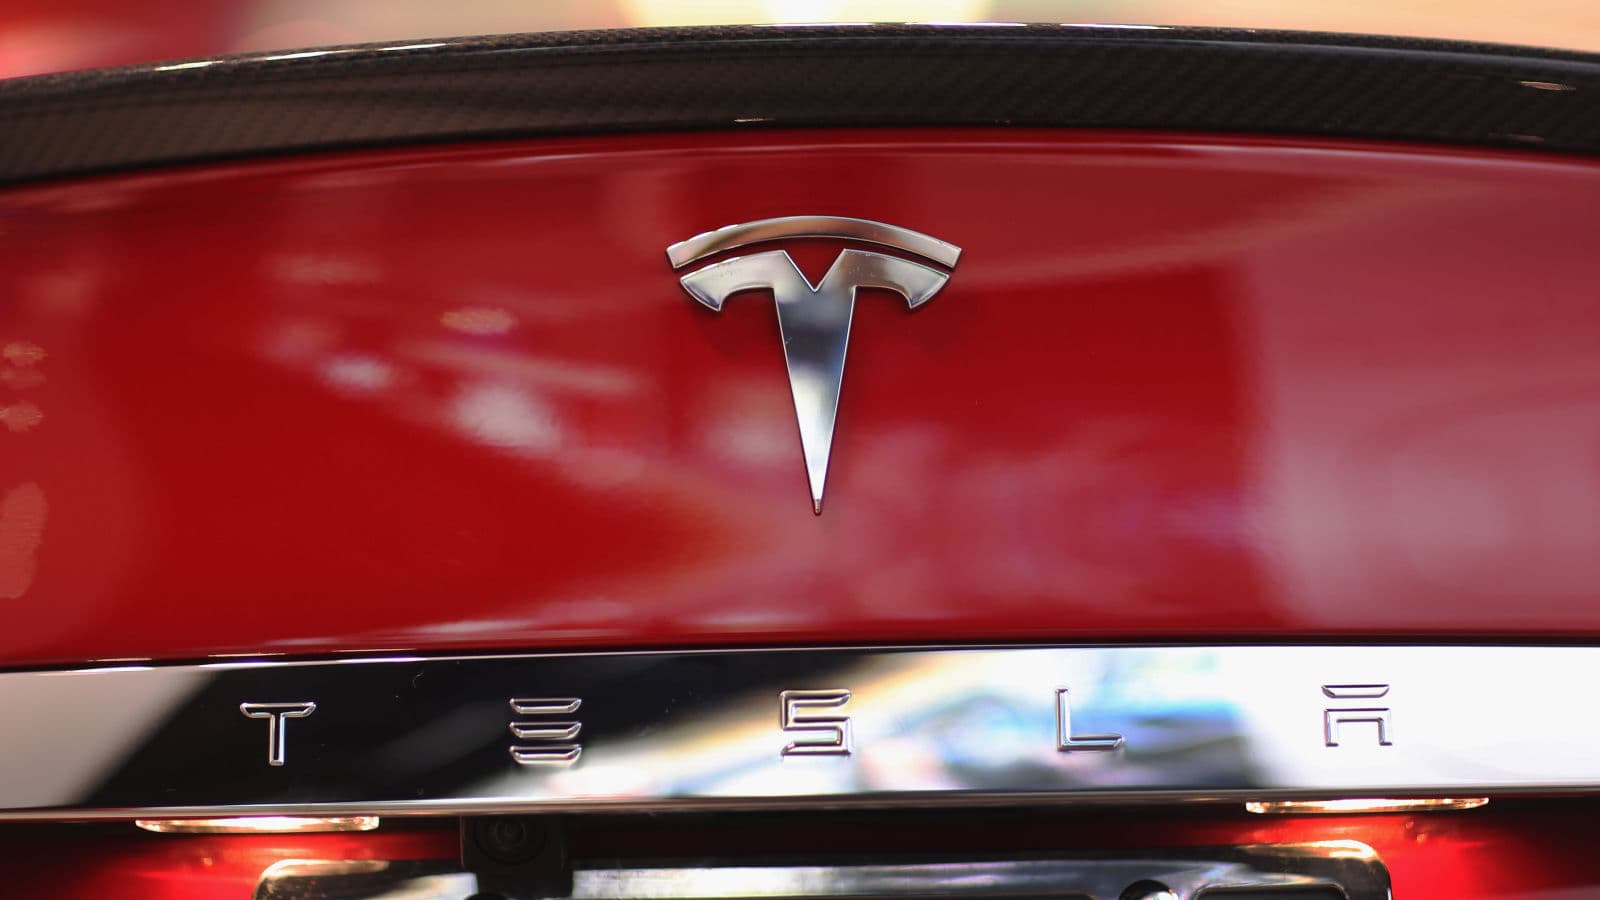 Detalhe do logo da Tesla em um carro